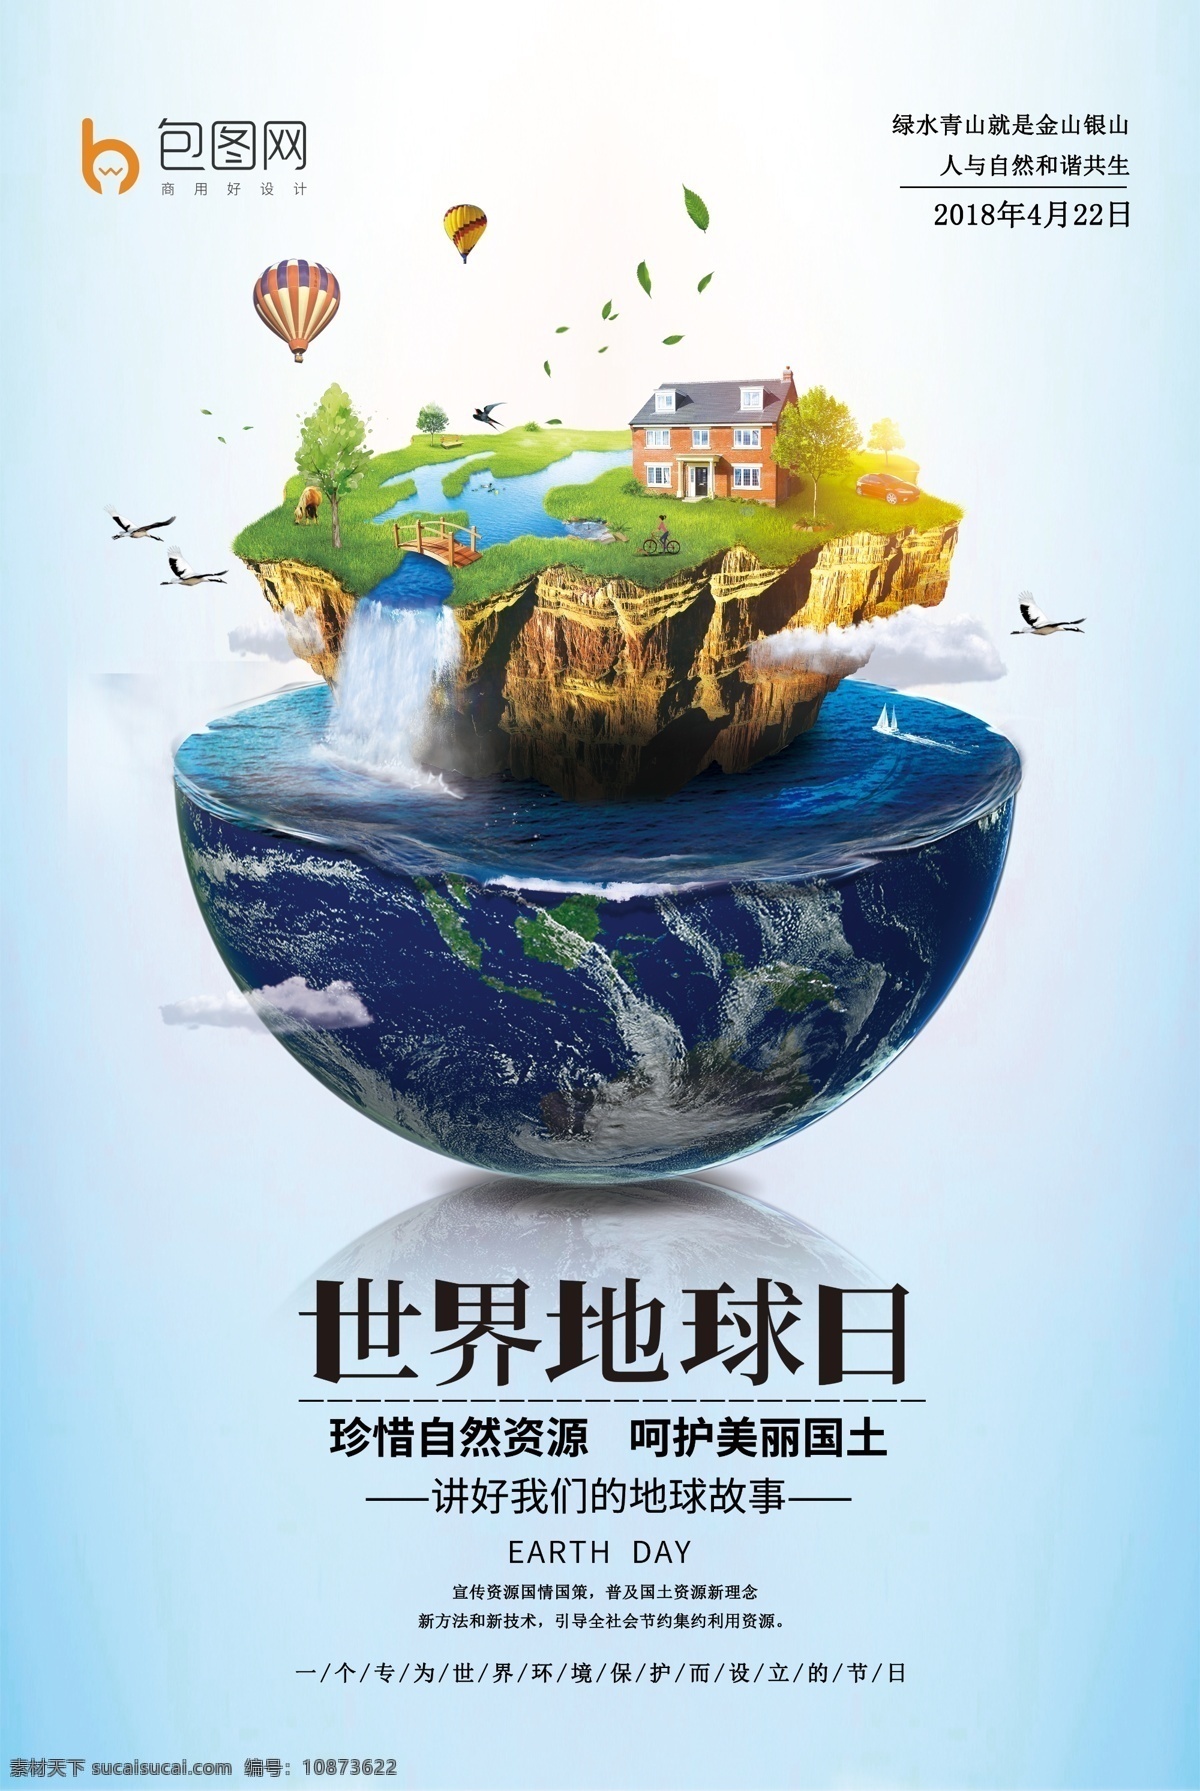 世界 地球日 卫生 海报 绿色环保 生态海报 爱护环境 植树节 环境卫生海报 创卫 世界地球日 海报展板